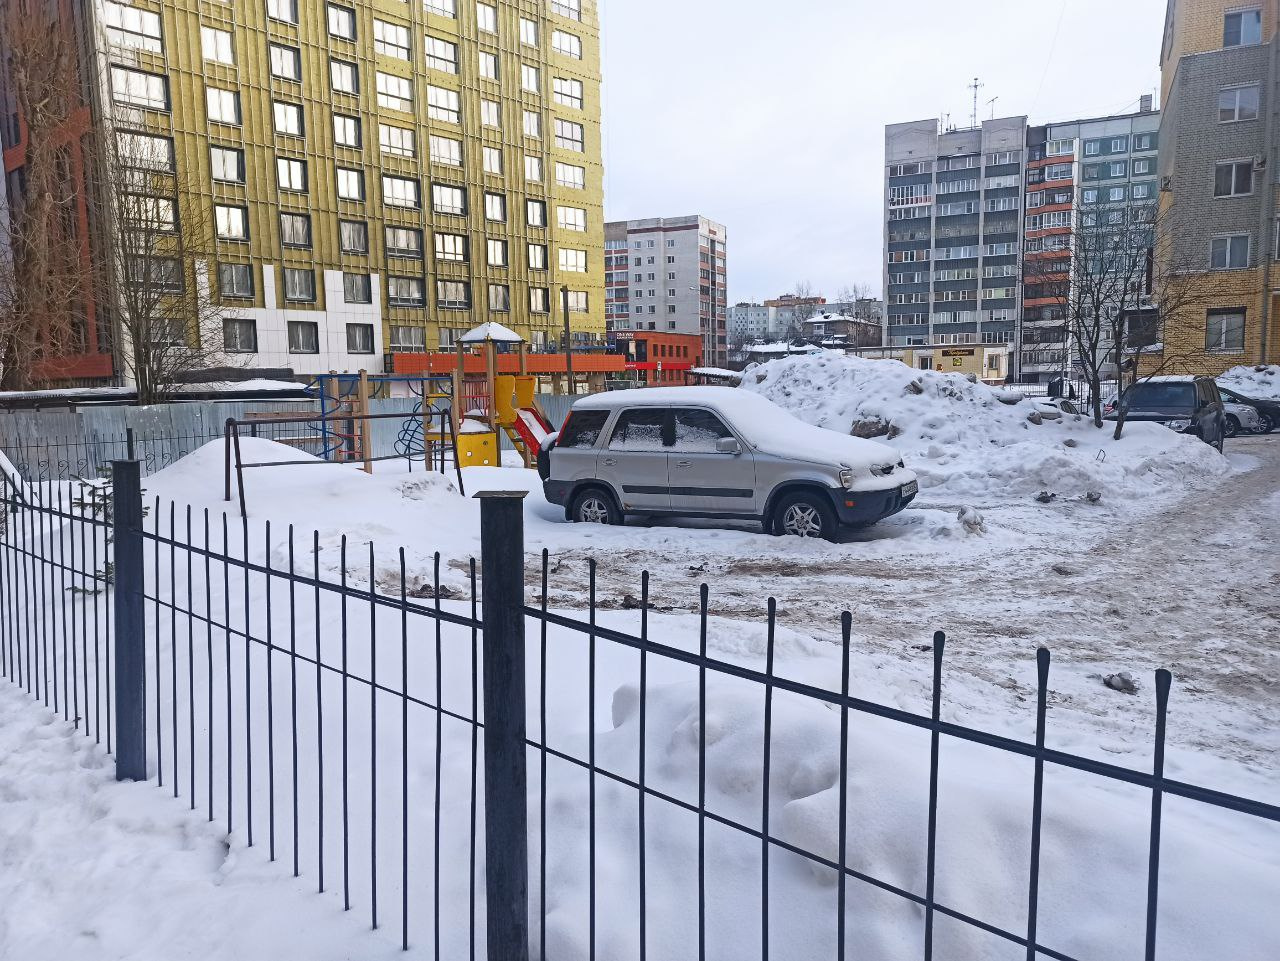 Жильцы Ломоносова, 90 жалуются, что с территории соседнего дома не убирают снег у забора — весной он стекает в подвал